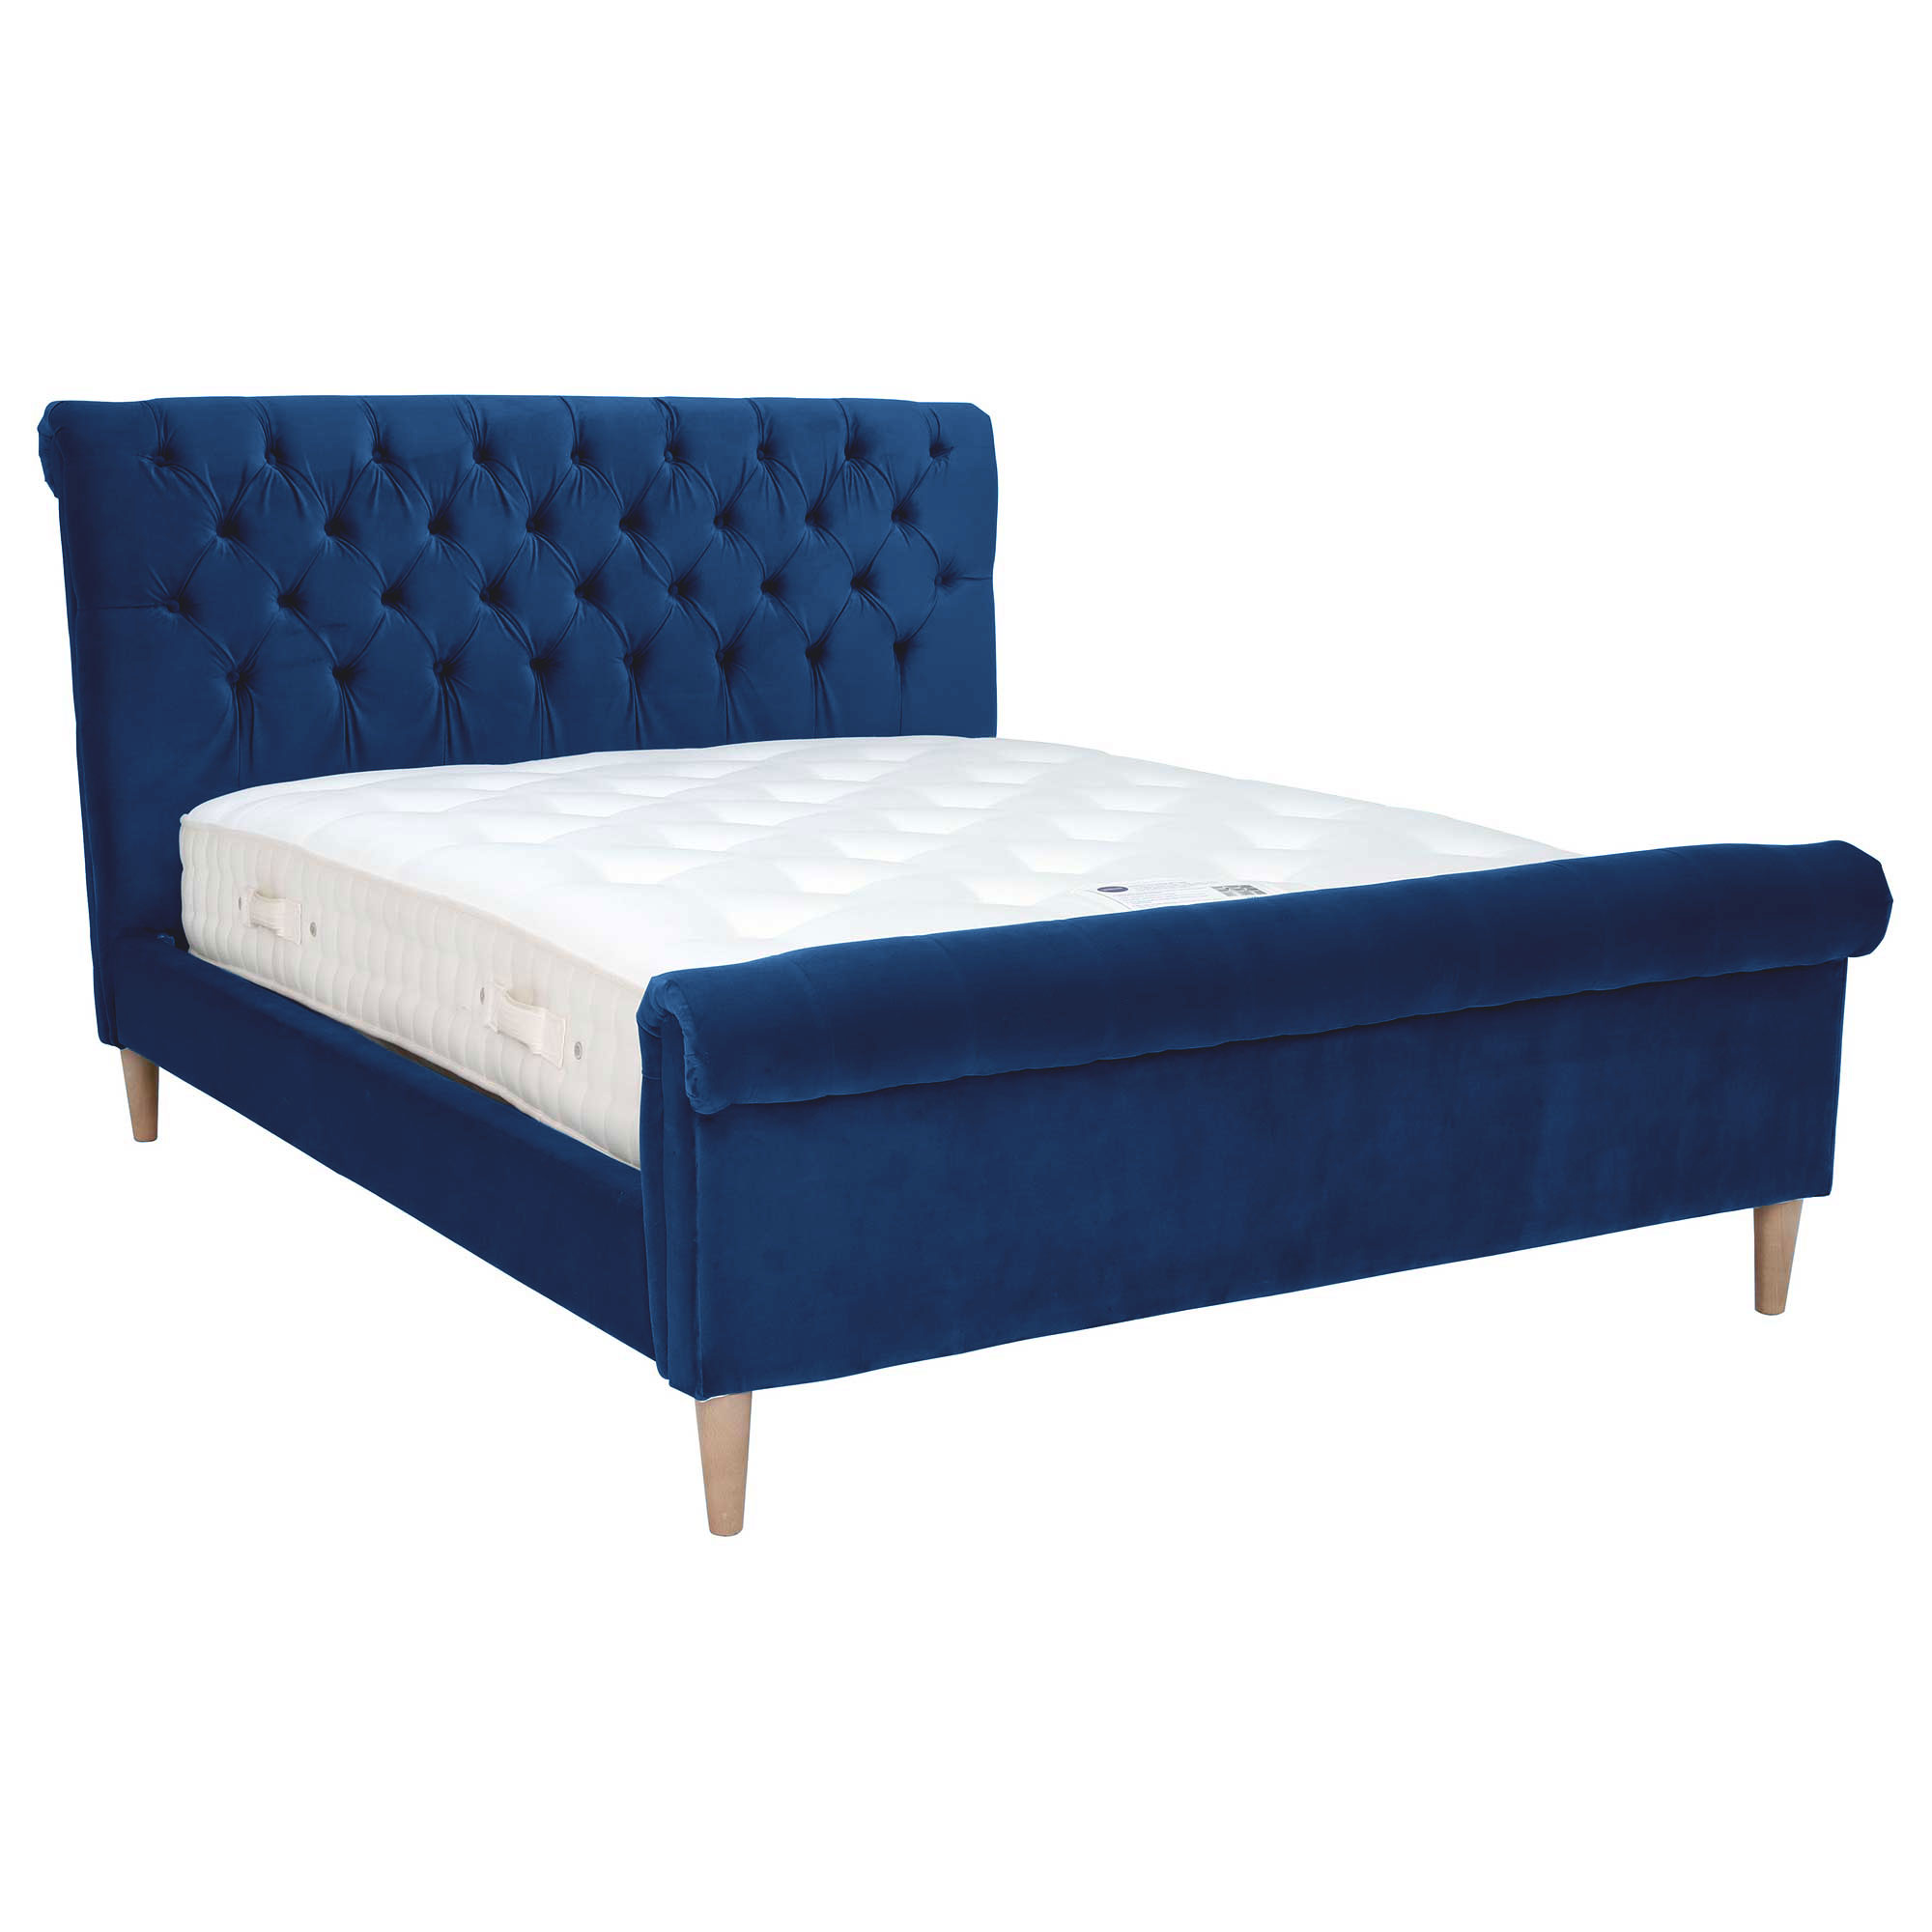 Hadley Superking Bed Frame, Blue | Super King | Barker & Stonehouse